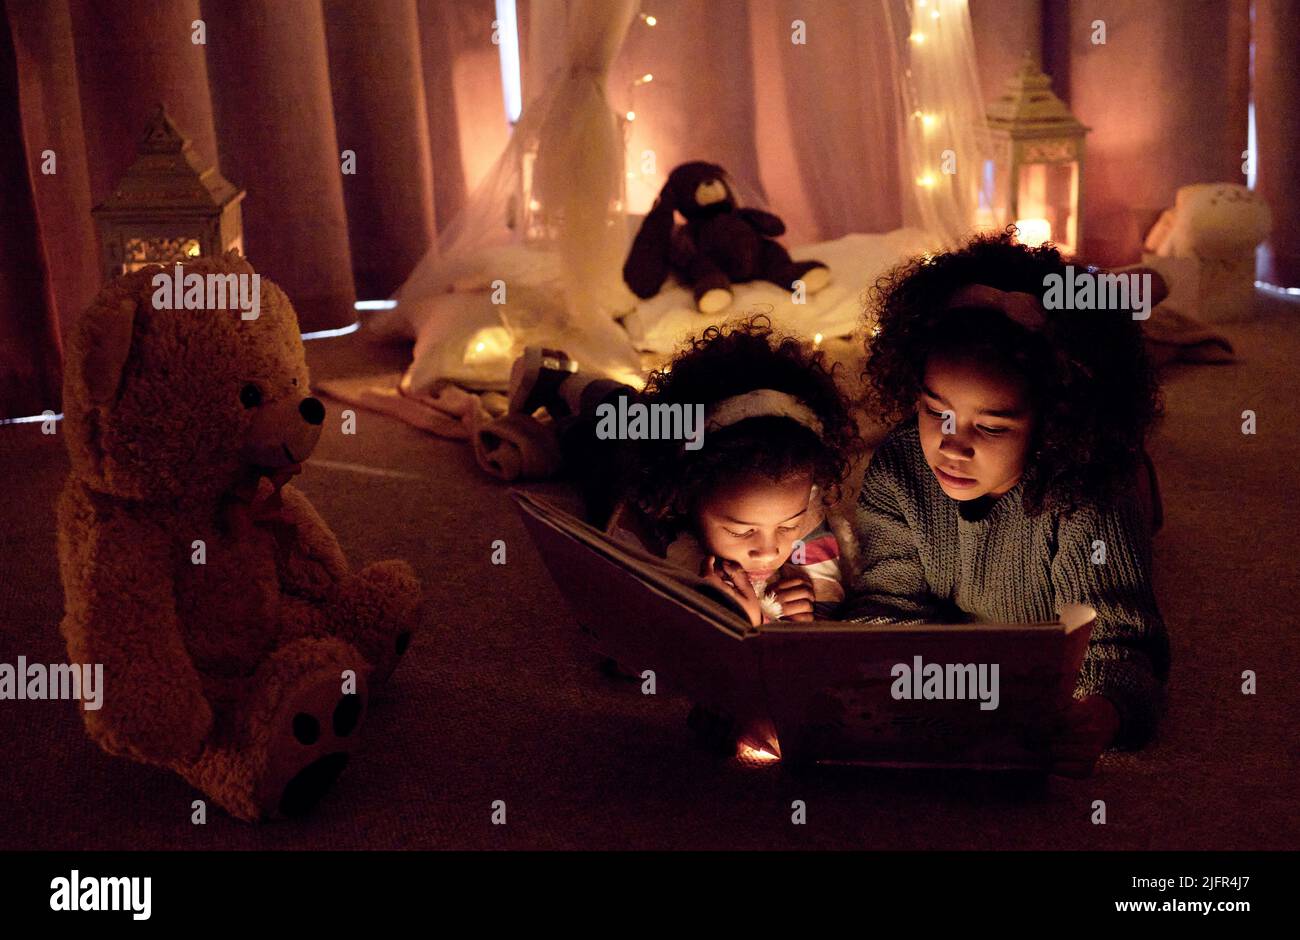 Öffne deinen Geist, öffne ein Buch. Aufnahme von zwei entzückenden kleinen Mädchen, die nachts in einem Zimmer zusammen ein Buch lesen. Stockfoto